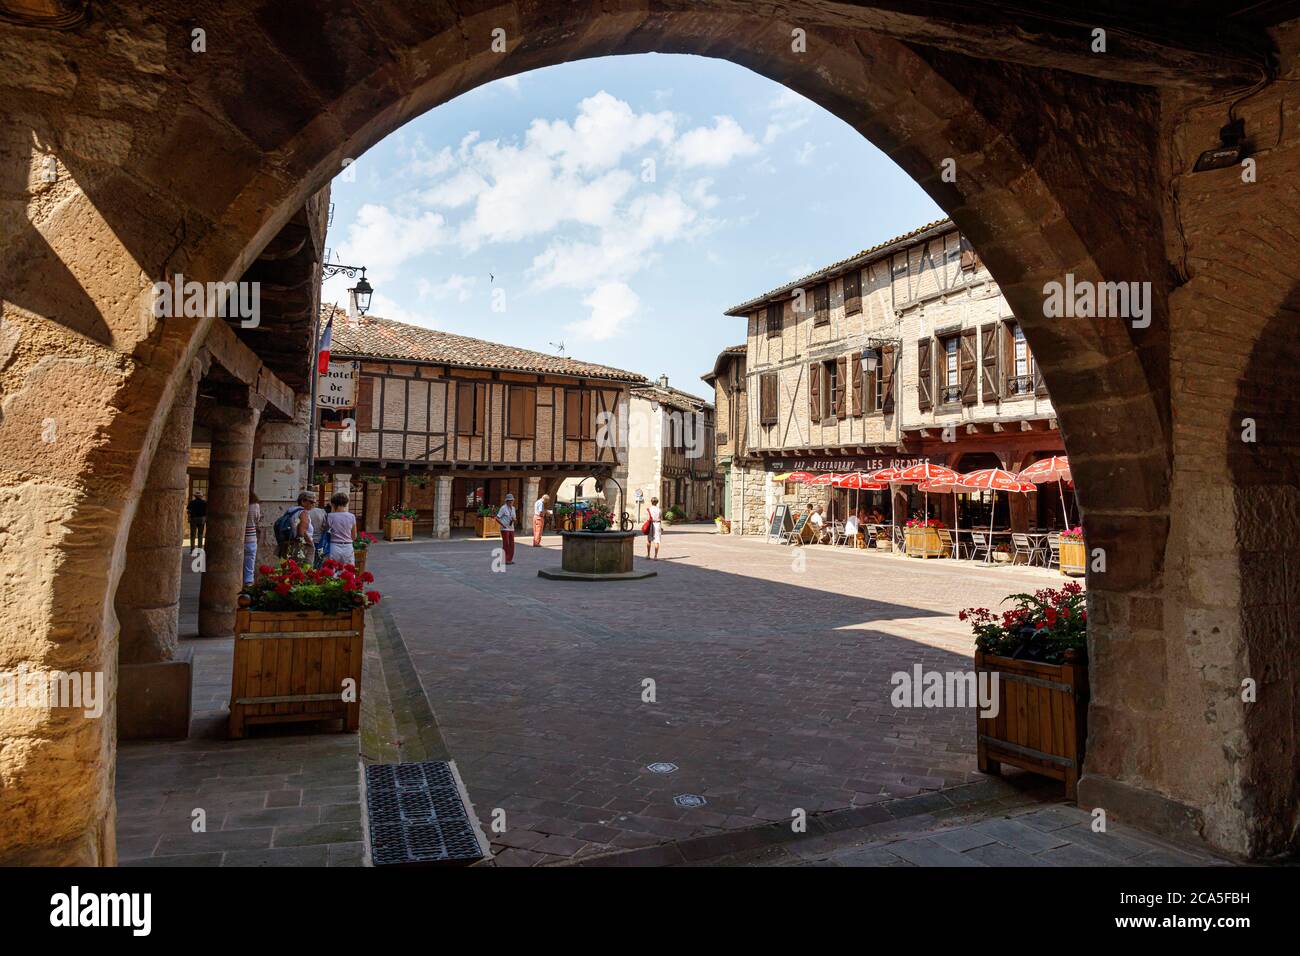 France, Tarn, Castelnau de Montmiral, étiqueté les plus Beaux villages de France (les plus beaux villages de France), la place du village médiéval Banque D'Images